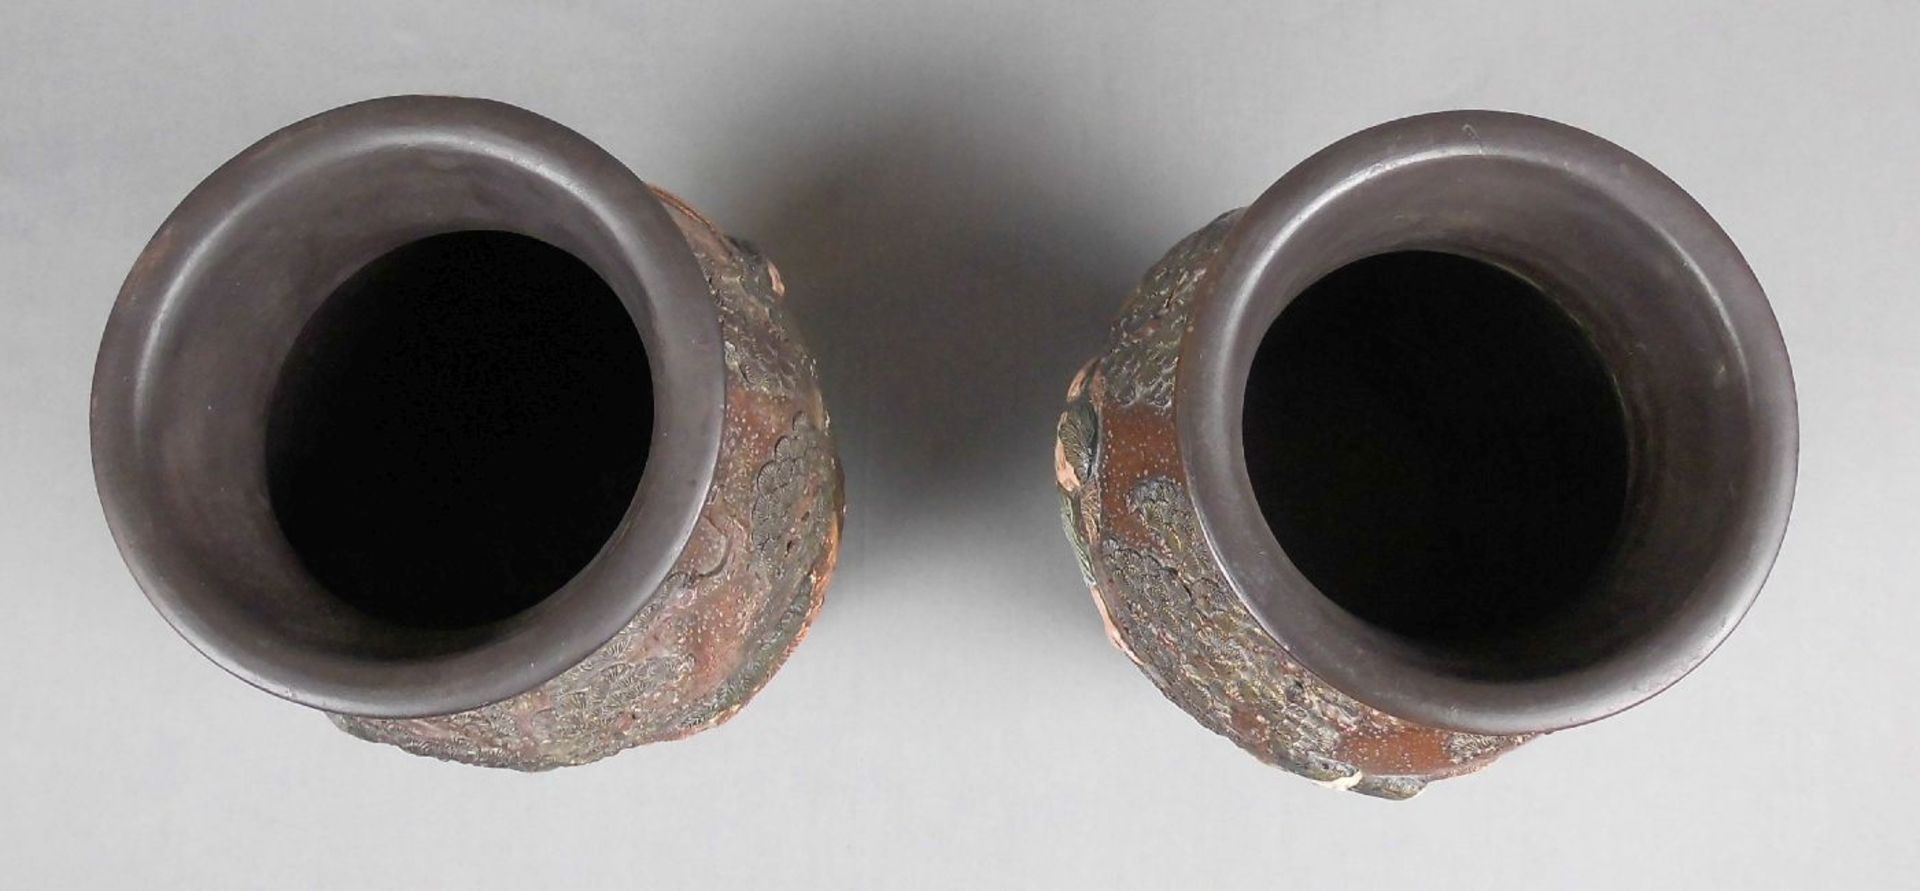 PAAR VASEN / pair of vases, Keramik, Japan. Balusterform mit reliefierter Wandung: Figuren im - Image 2 of 3